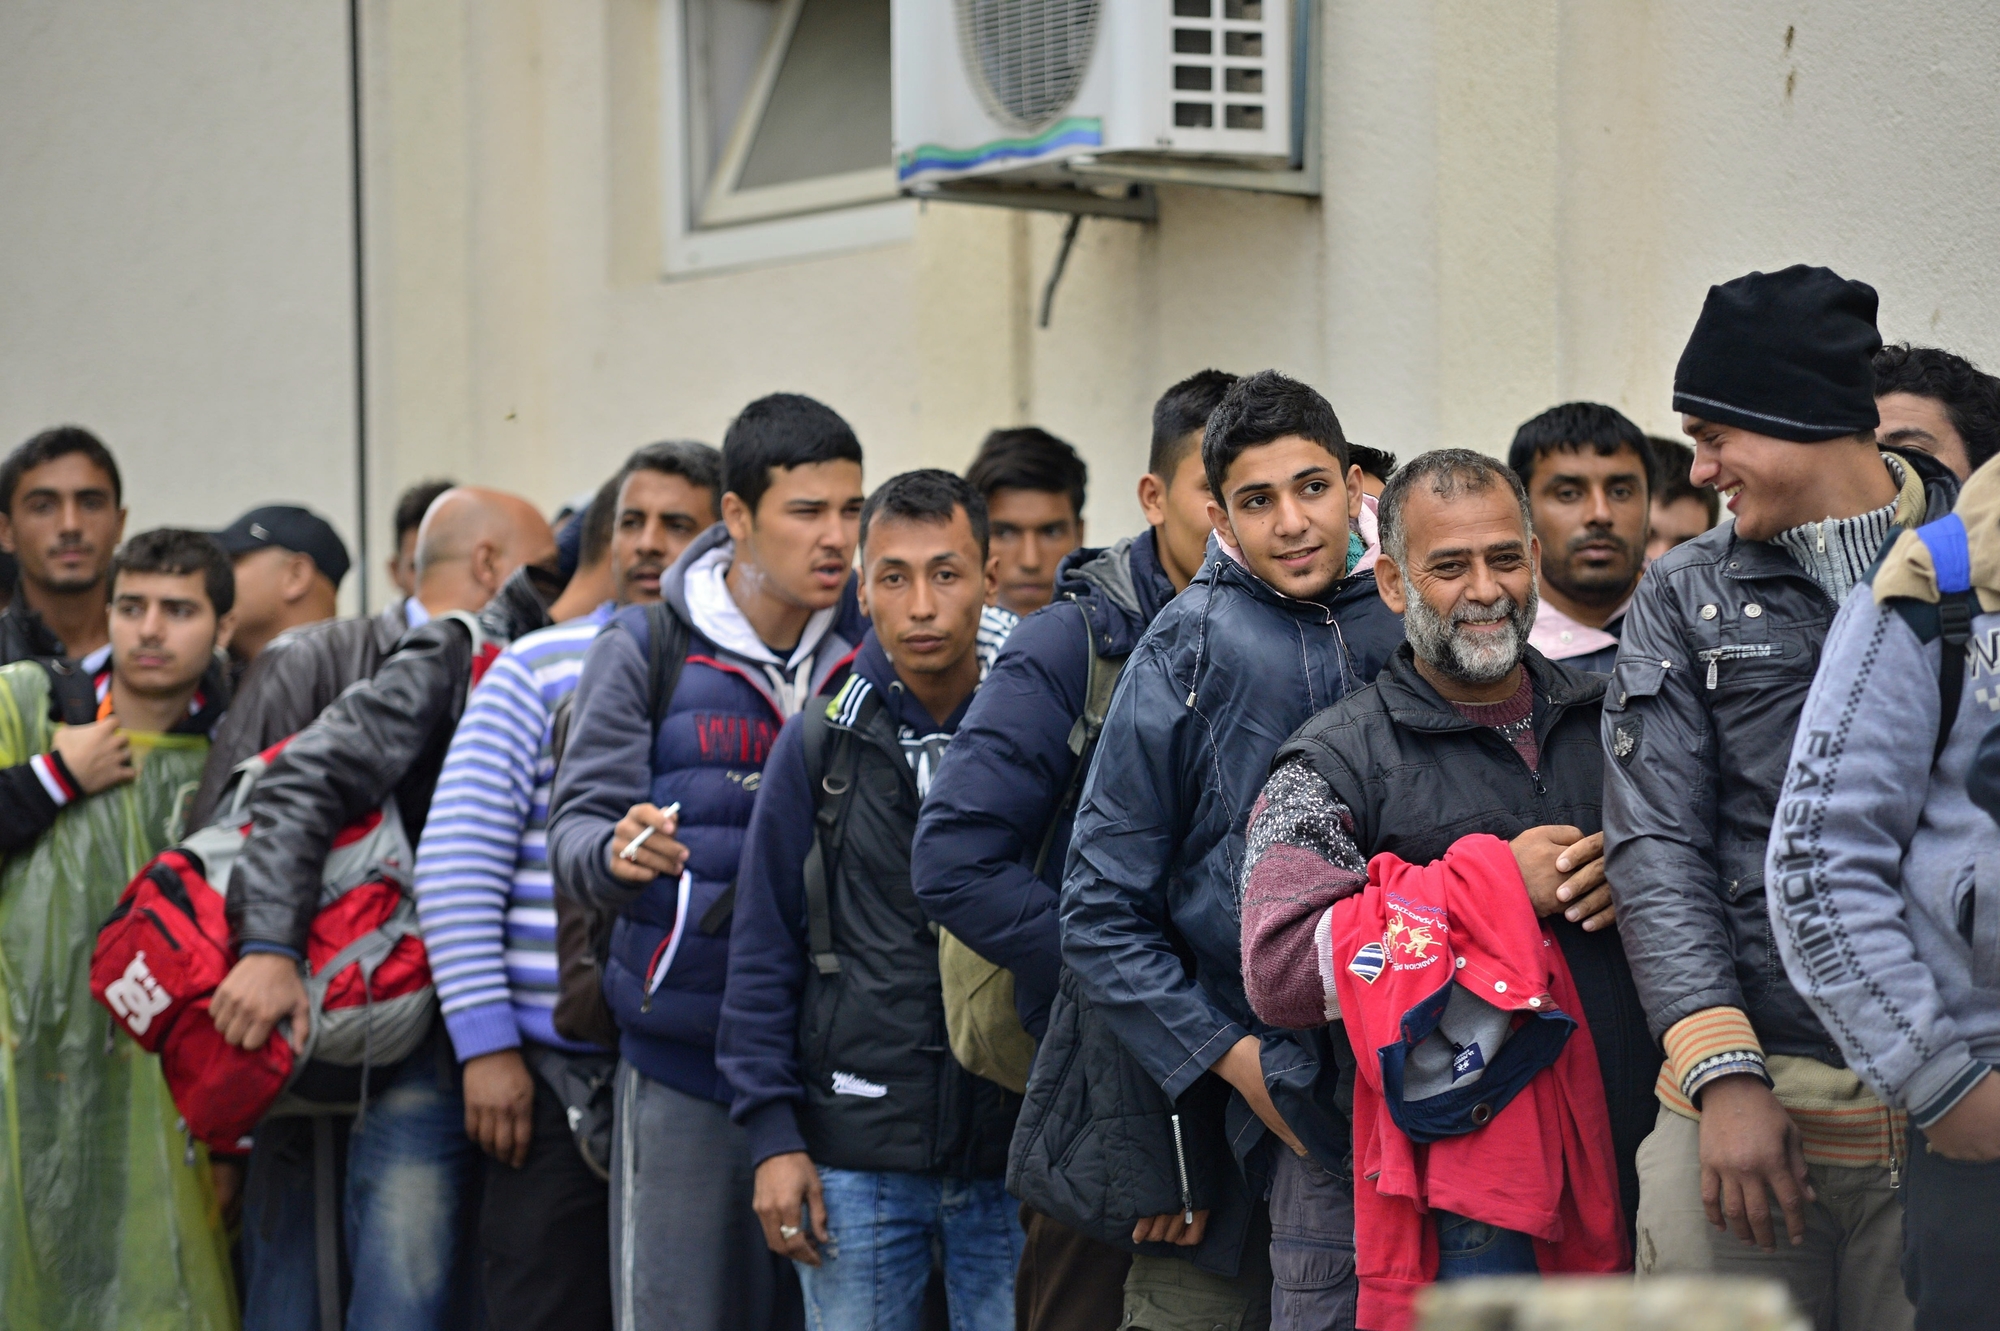 Tavaly is emelkedett a regisztrált menedékkérők száma Németországban